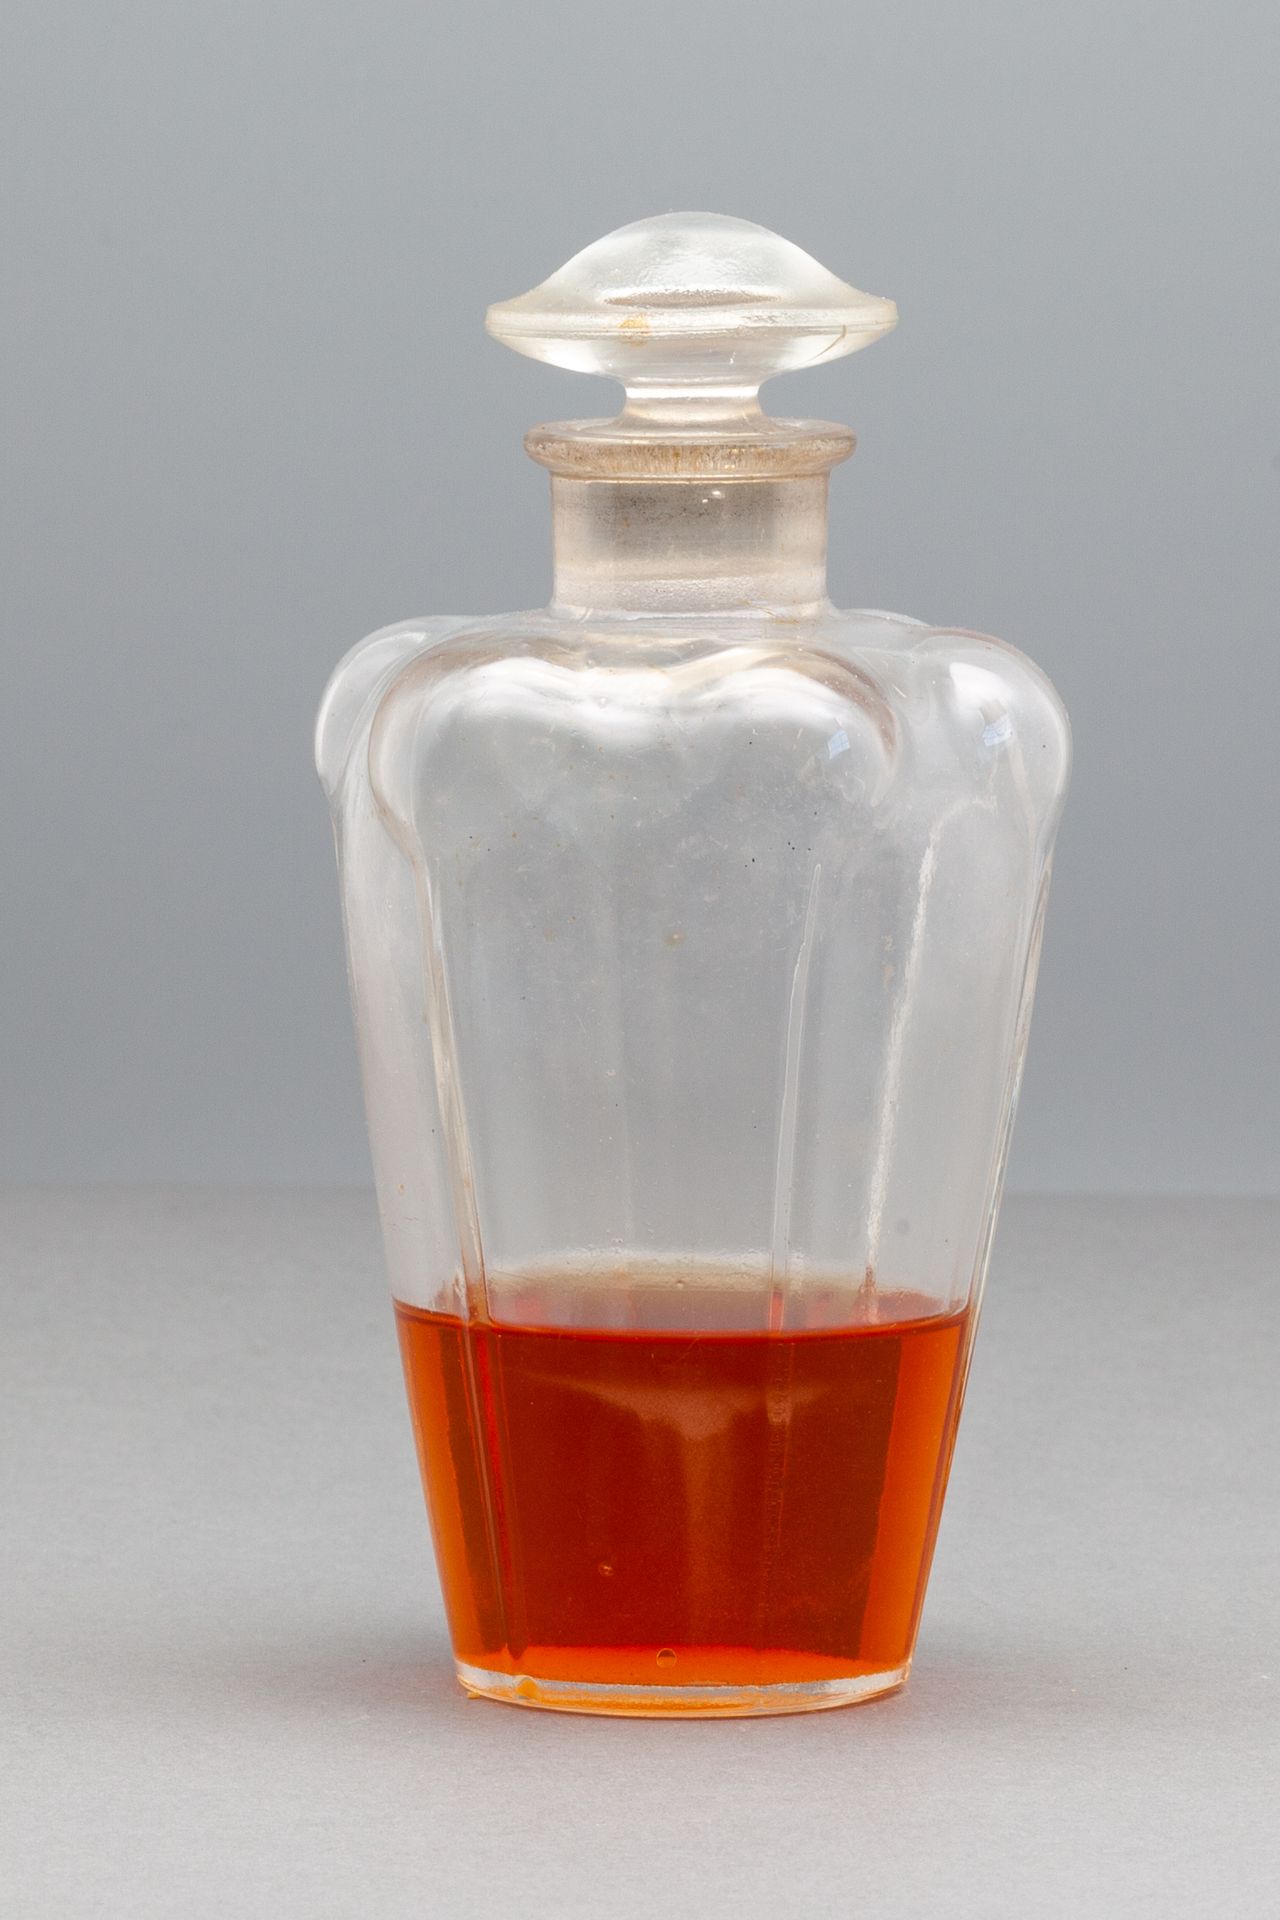 L.T.PIVER "ILKA EAU DE TOILETTE" Glass bottle decorated with six faces - Cap-sha&hellip;